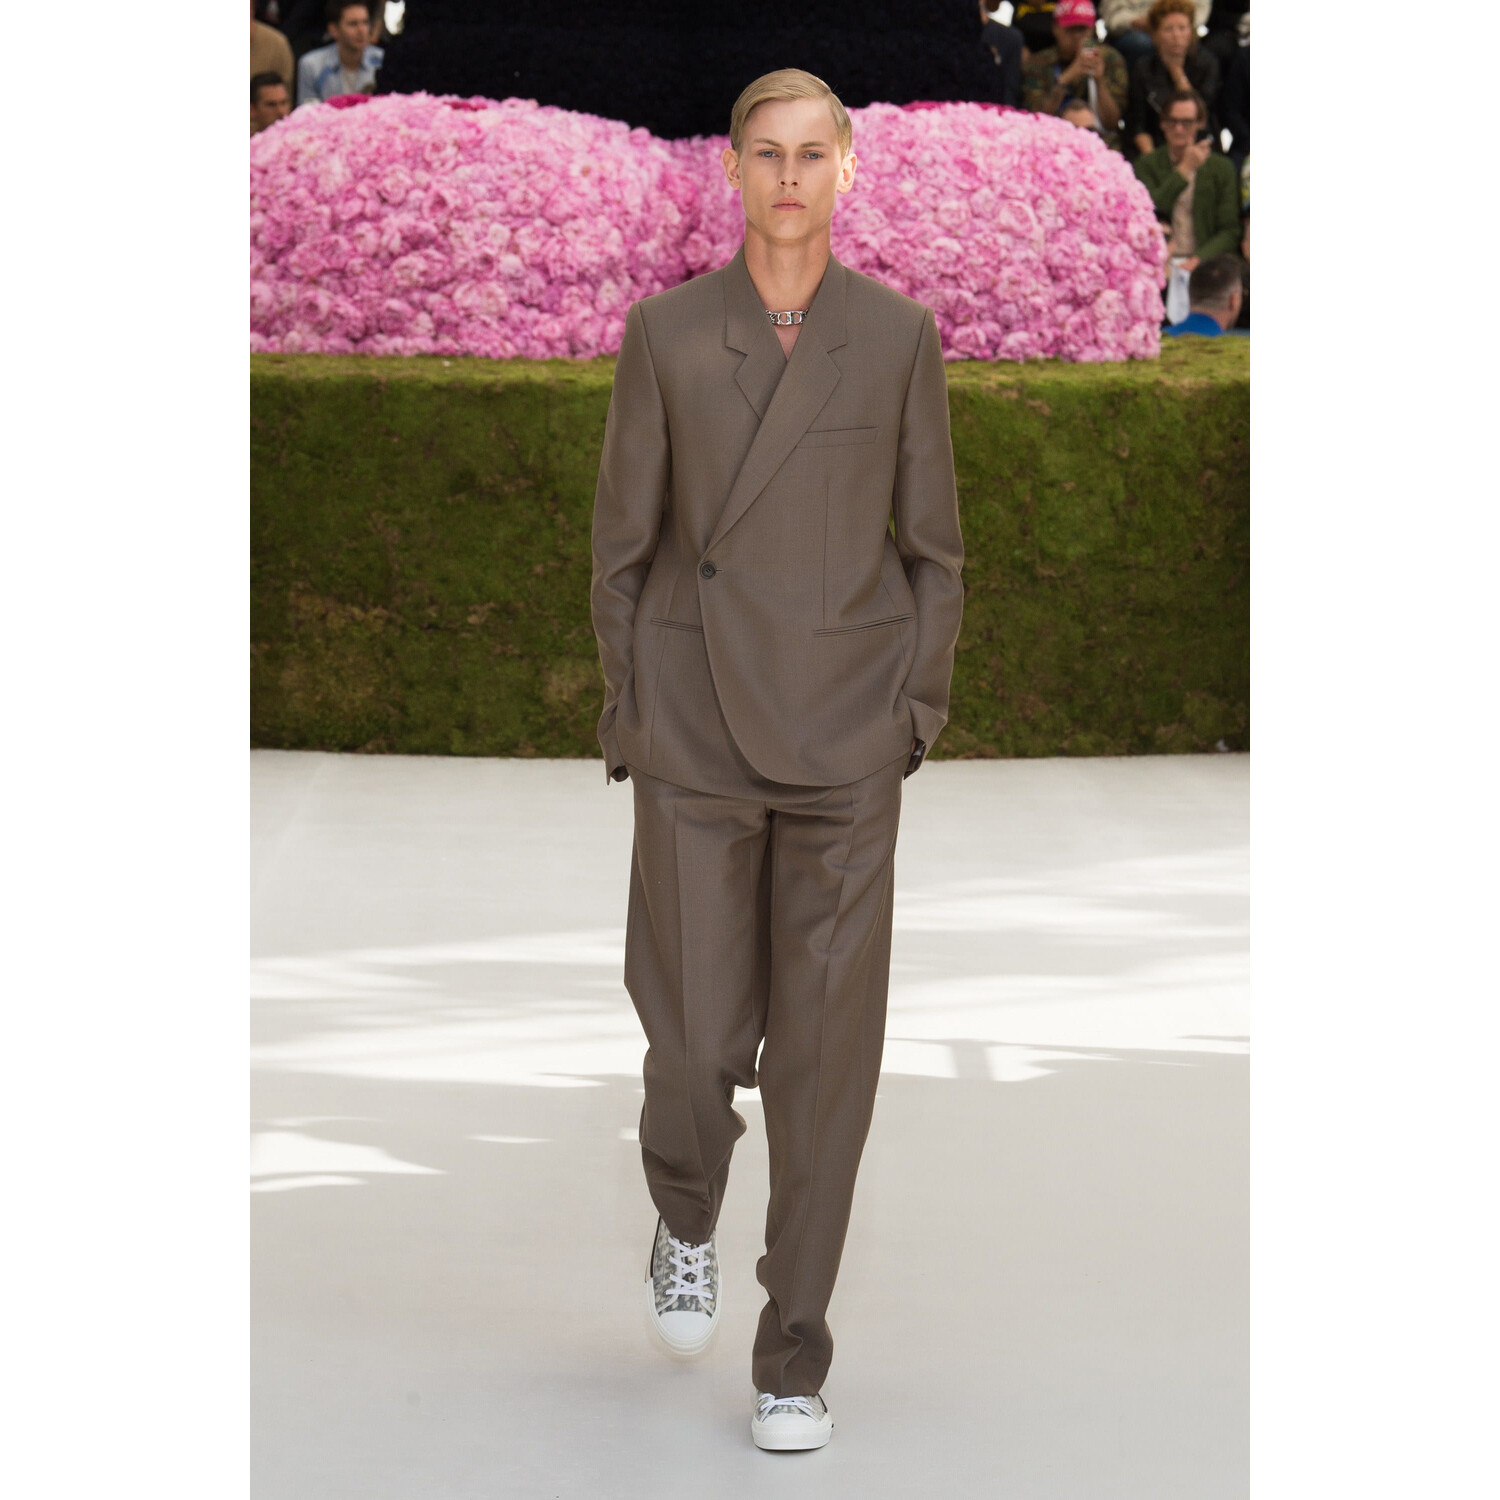 Фото Dior Homme Spring 2019 Menswear Ким Джонс / Диор Весна Лето 2019 Мужская Неделя Моды в Париже Ким Джонс